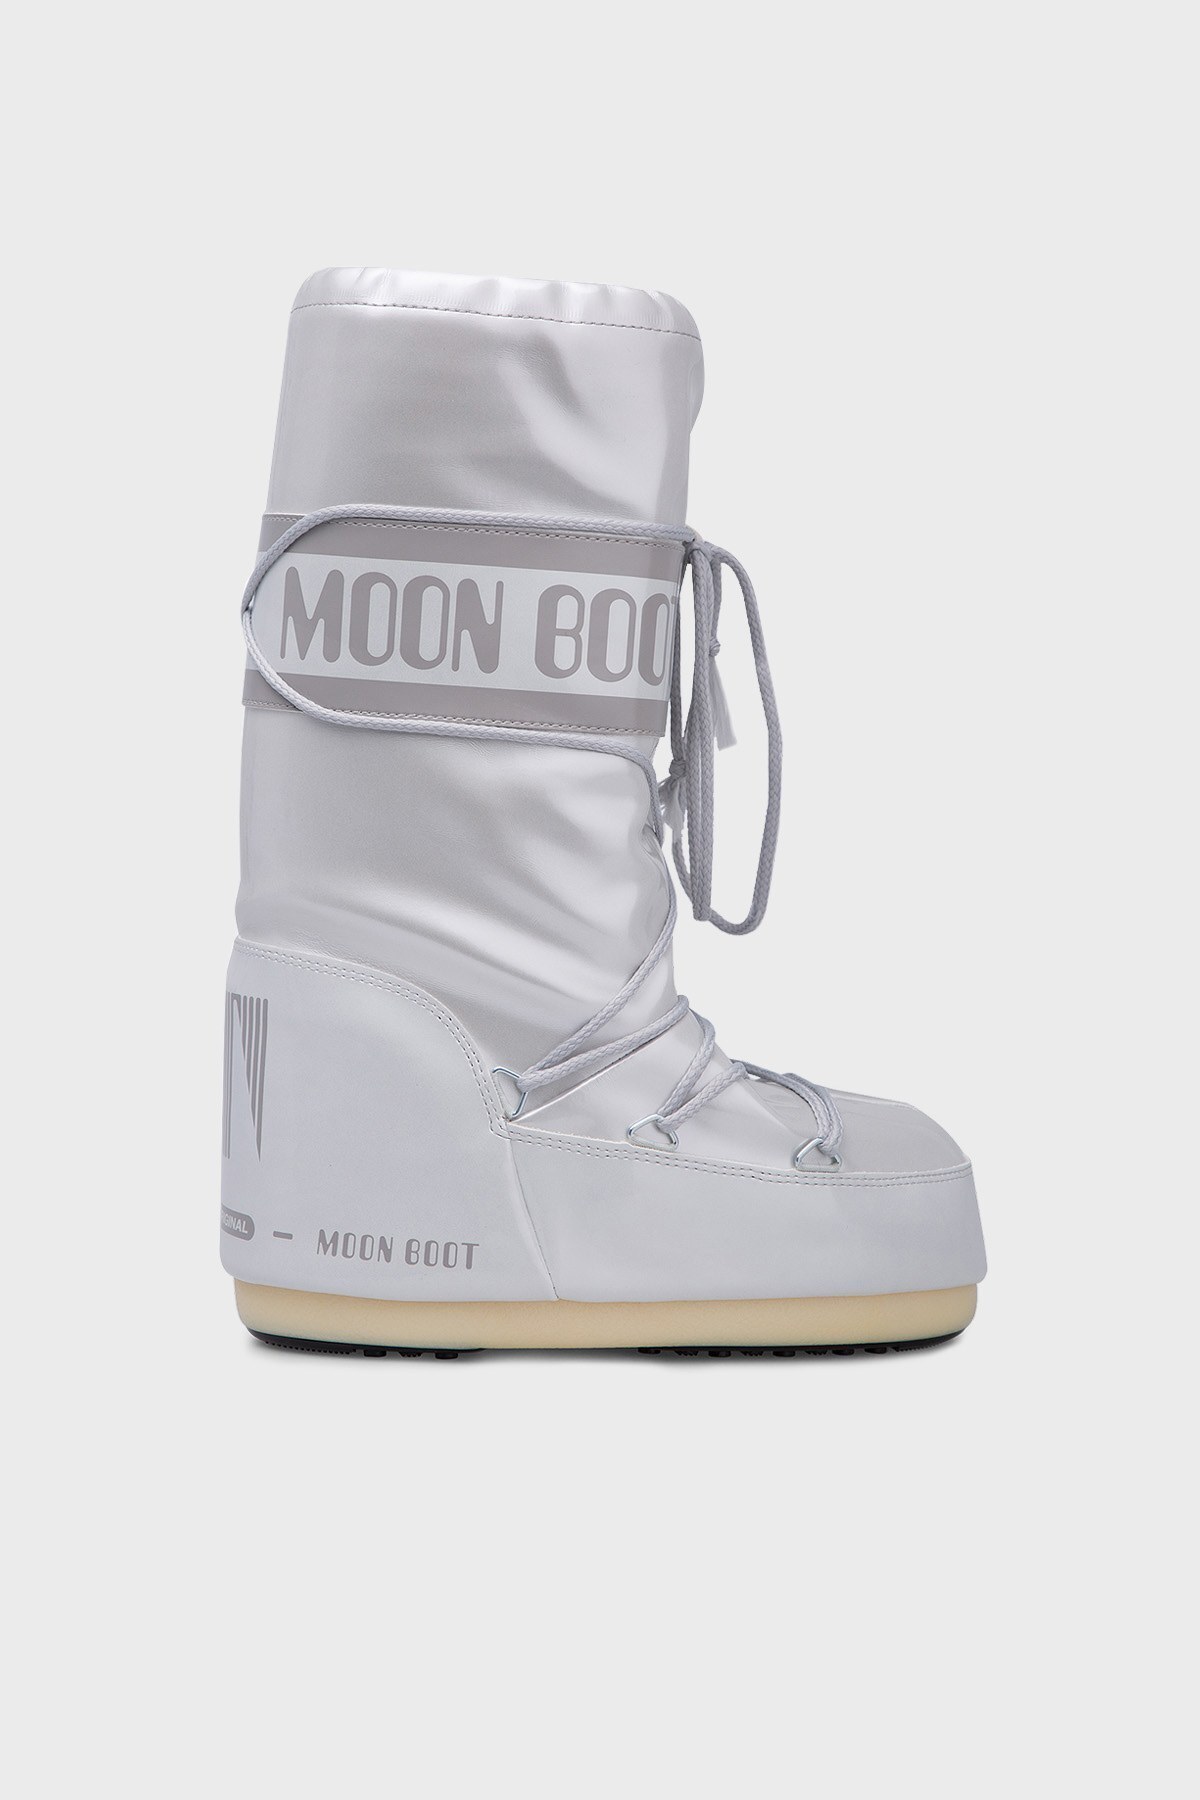 Moon Boot Bayan Kar Botu 1402140 0 002 GRİ